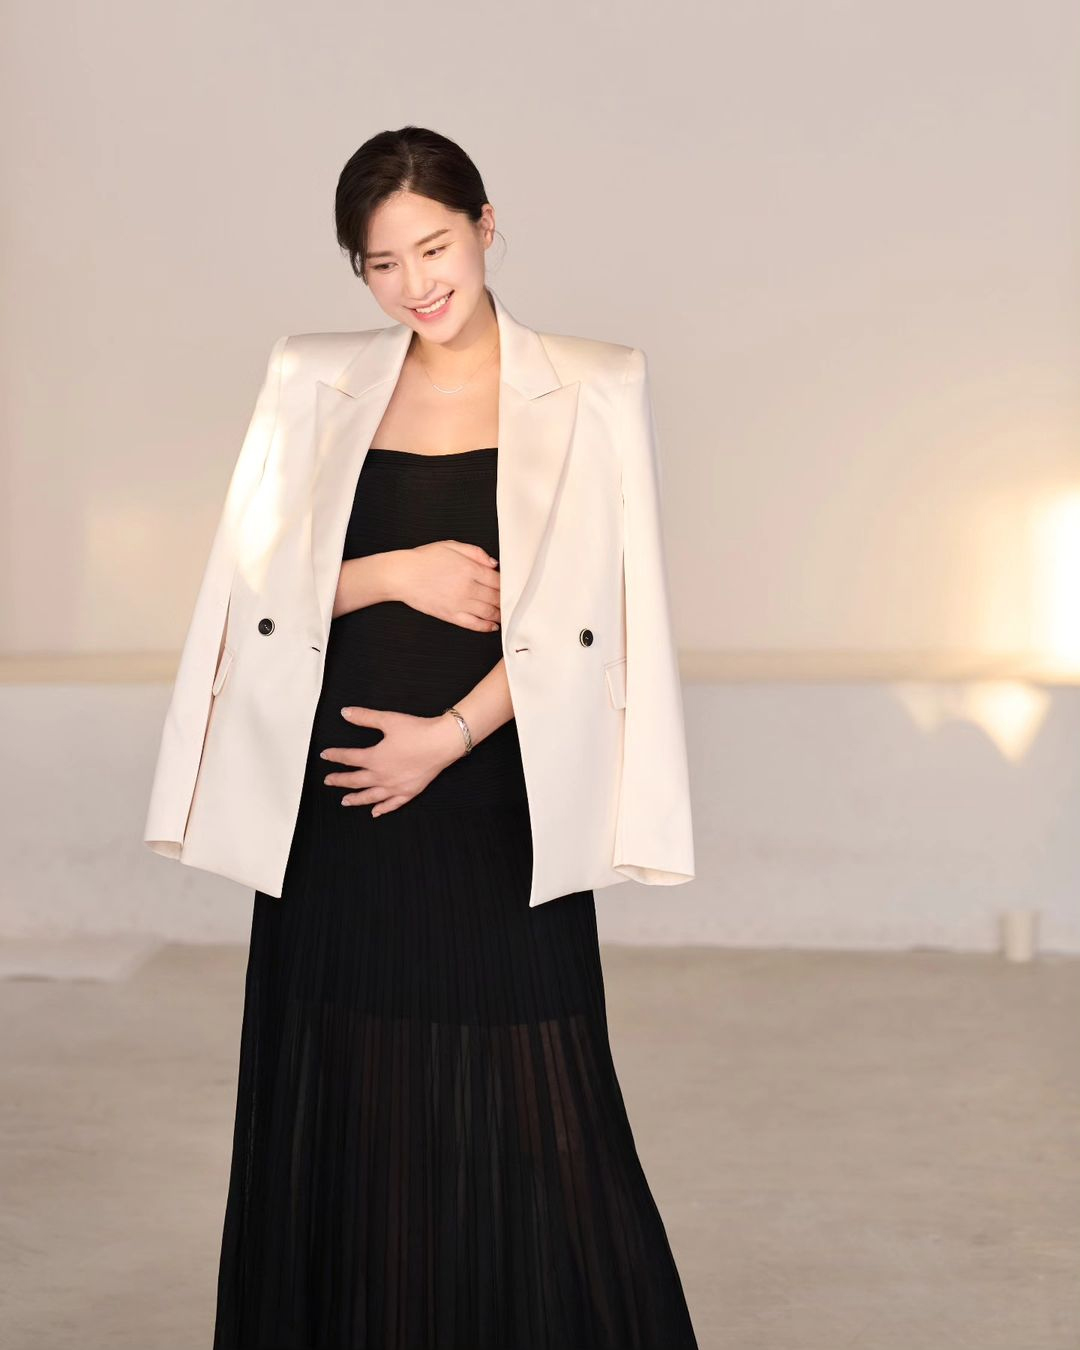 「双子のプレママ」コン・ヒョンジュ、レースのドレスをまとって披露する妊婦姿